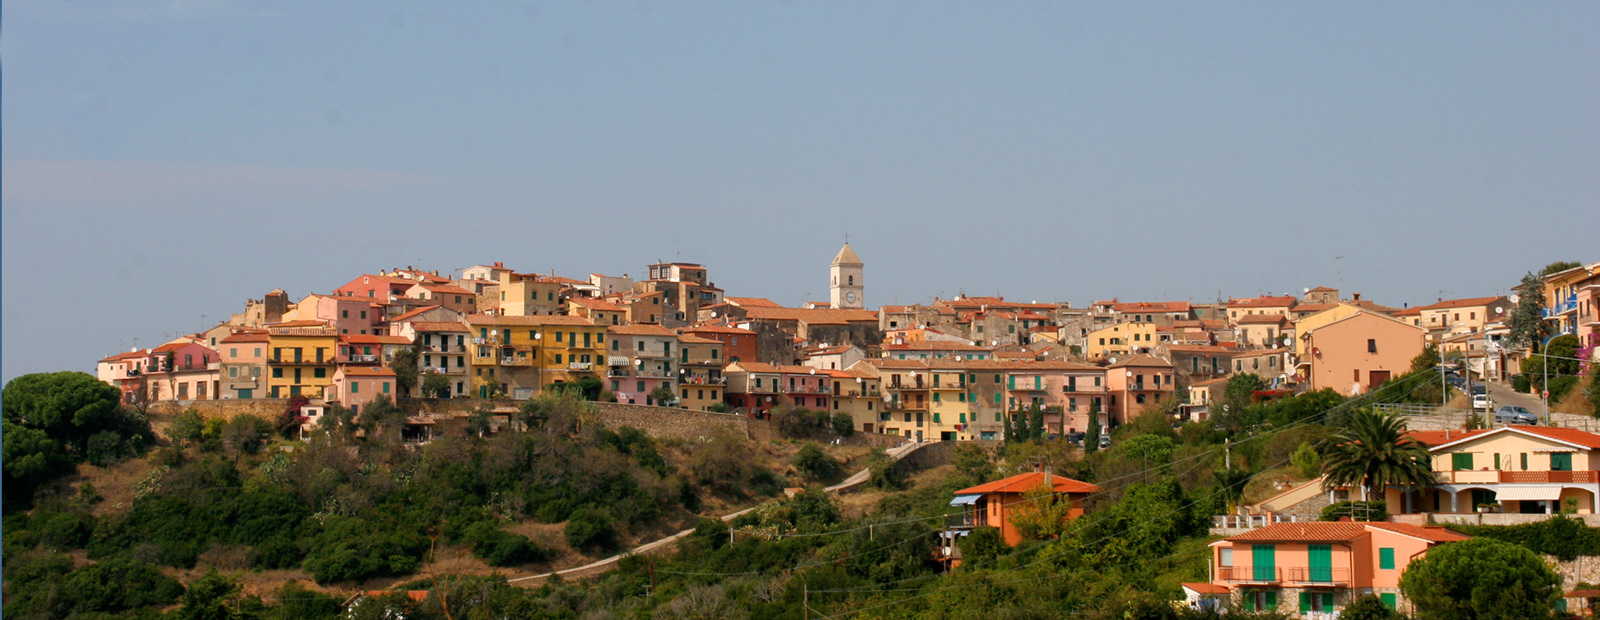 Luxuriöse Ferienhäuser auf Elba